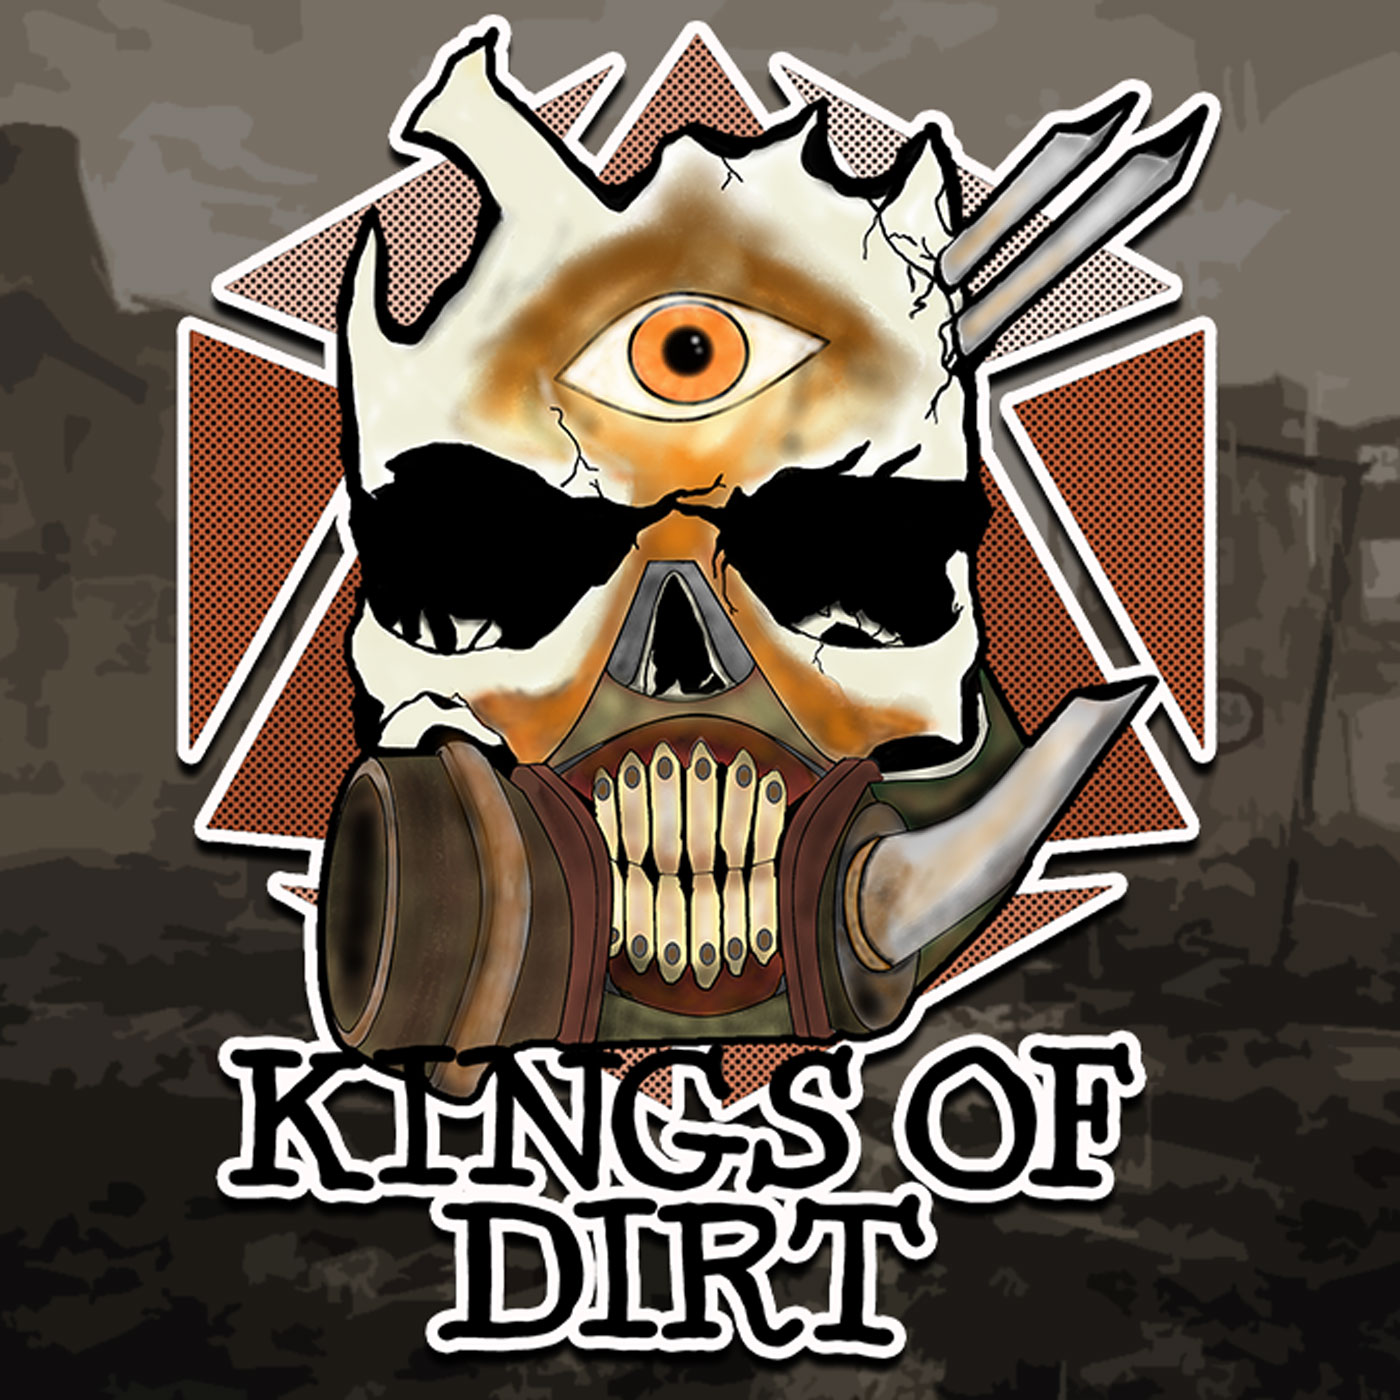 Show artwork for Kings of Dirt